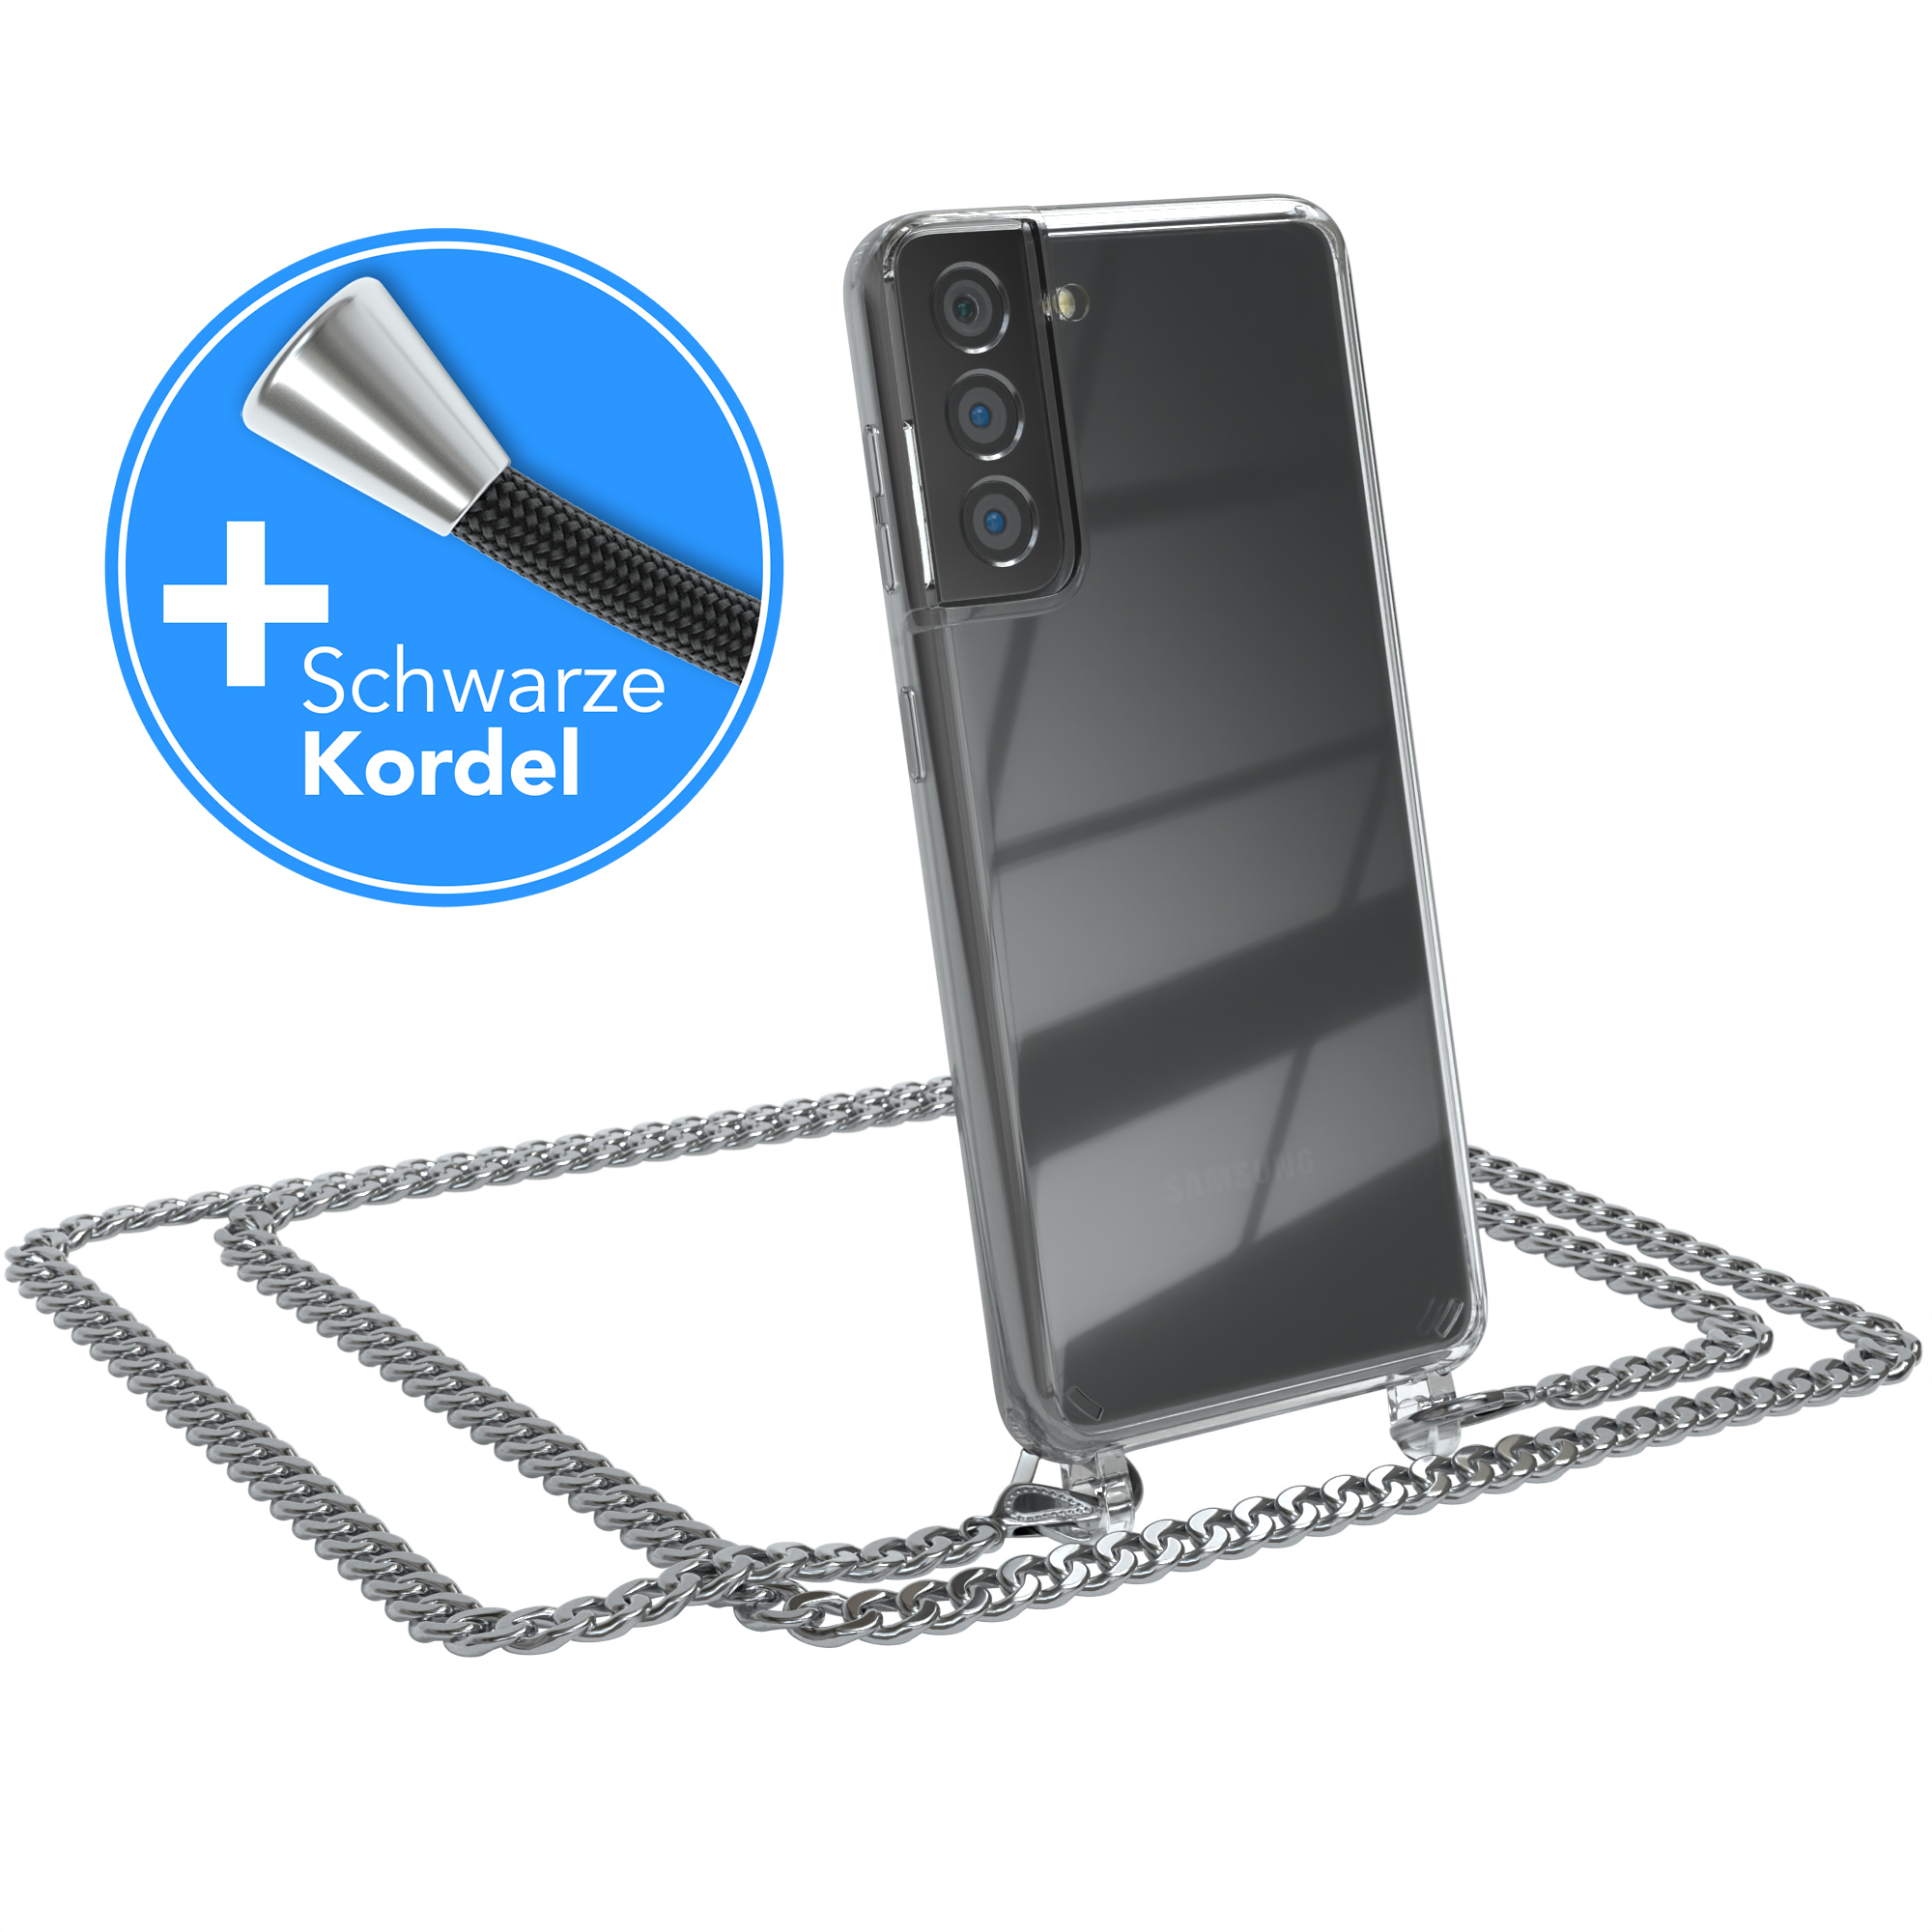 EAZY CASE Samsung, Handykette + Umhängetasche, extra Silber S21 Galaxy Kordel Metall 5G, Schwarz